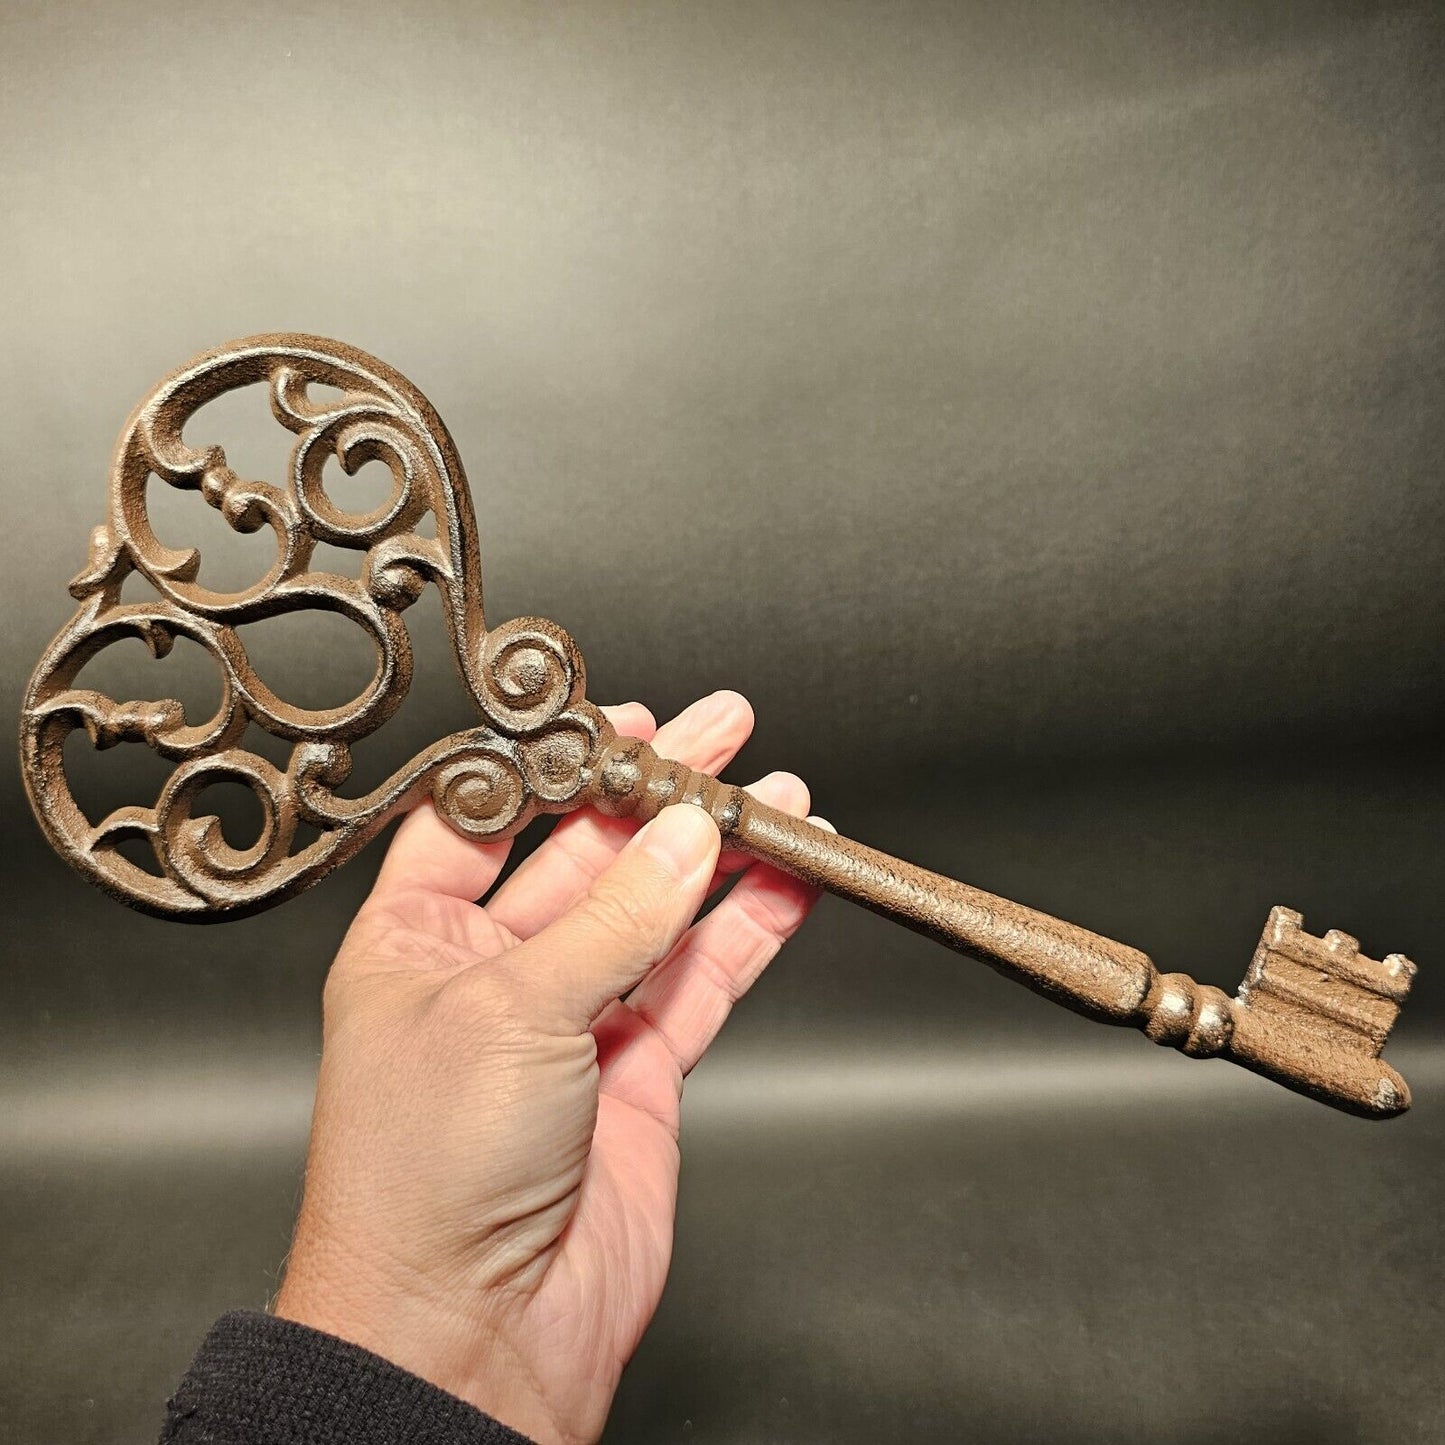 13" Antique Vintage Style Cast Iron Large Ornate Skeleton Key